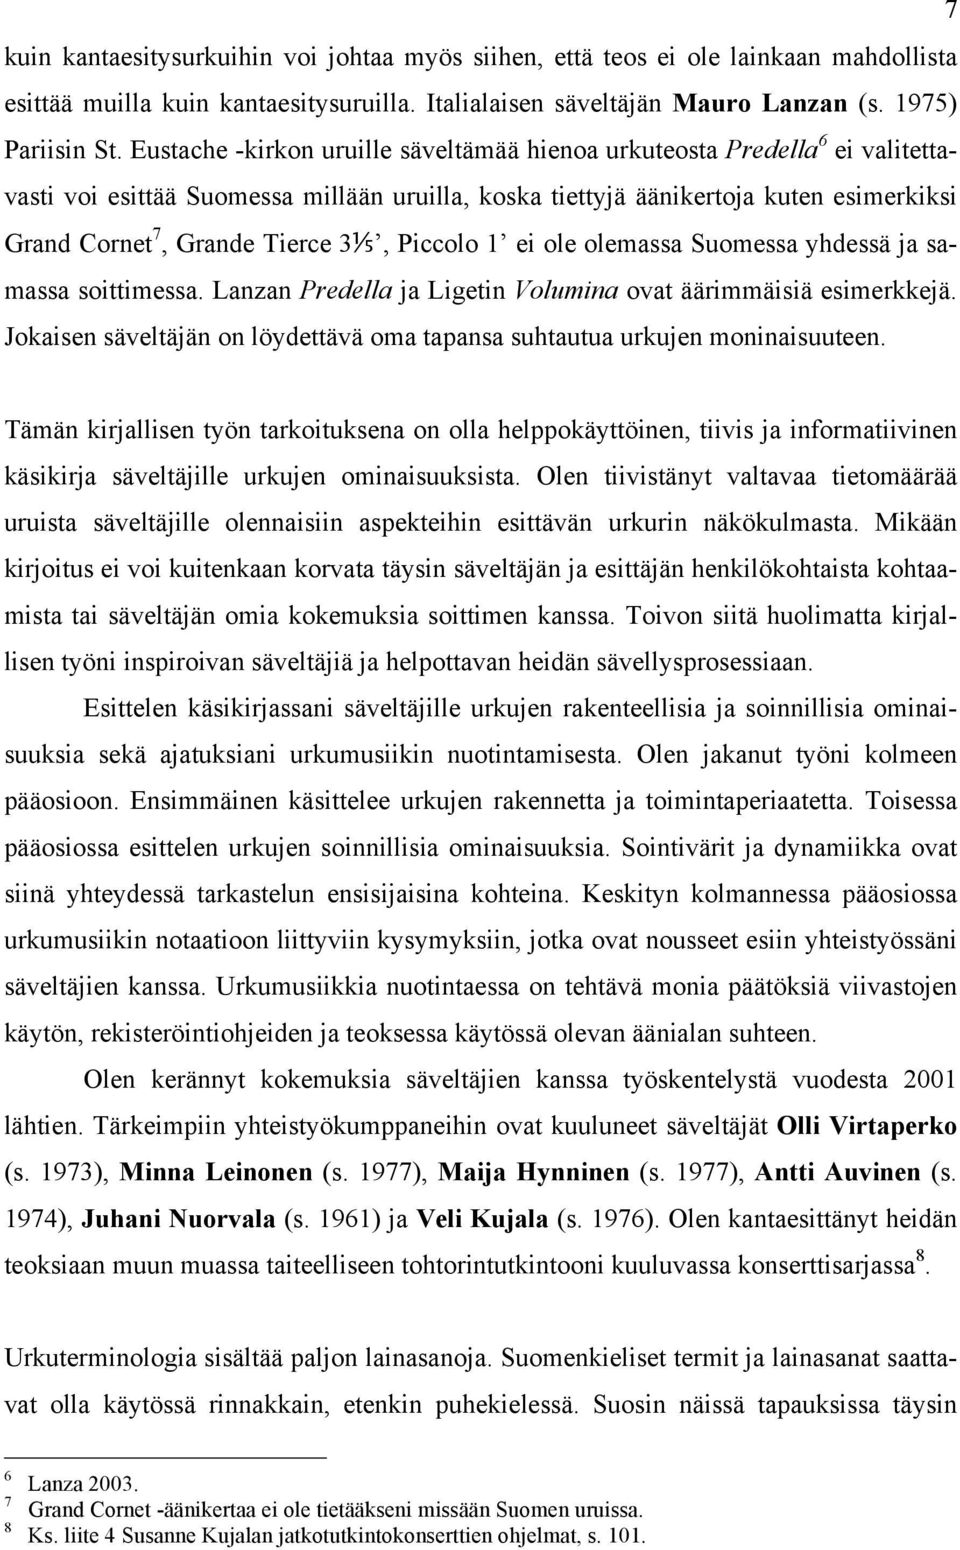 Piccolo 1 ei ole olemassa Suomessa yhdessä ja samassa soittimessa. Lanzan Predella ja Ligetin Volumina ovat äärimmäisiä esimerkkejä.